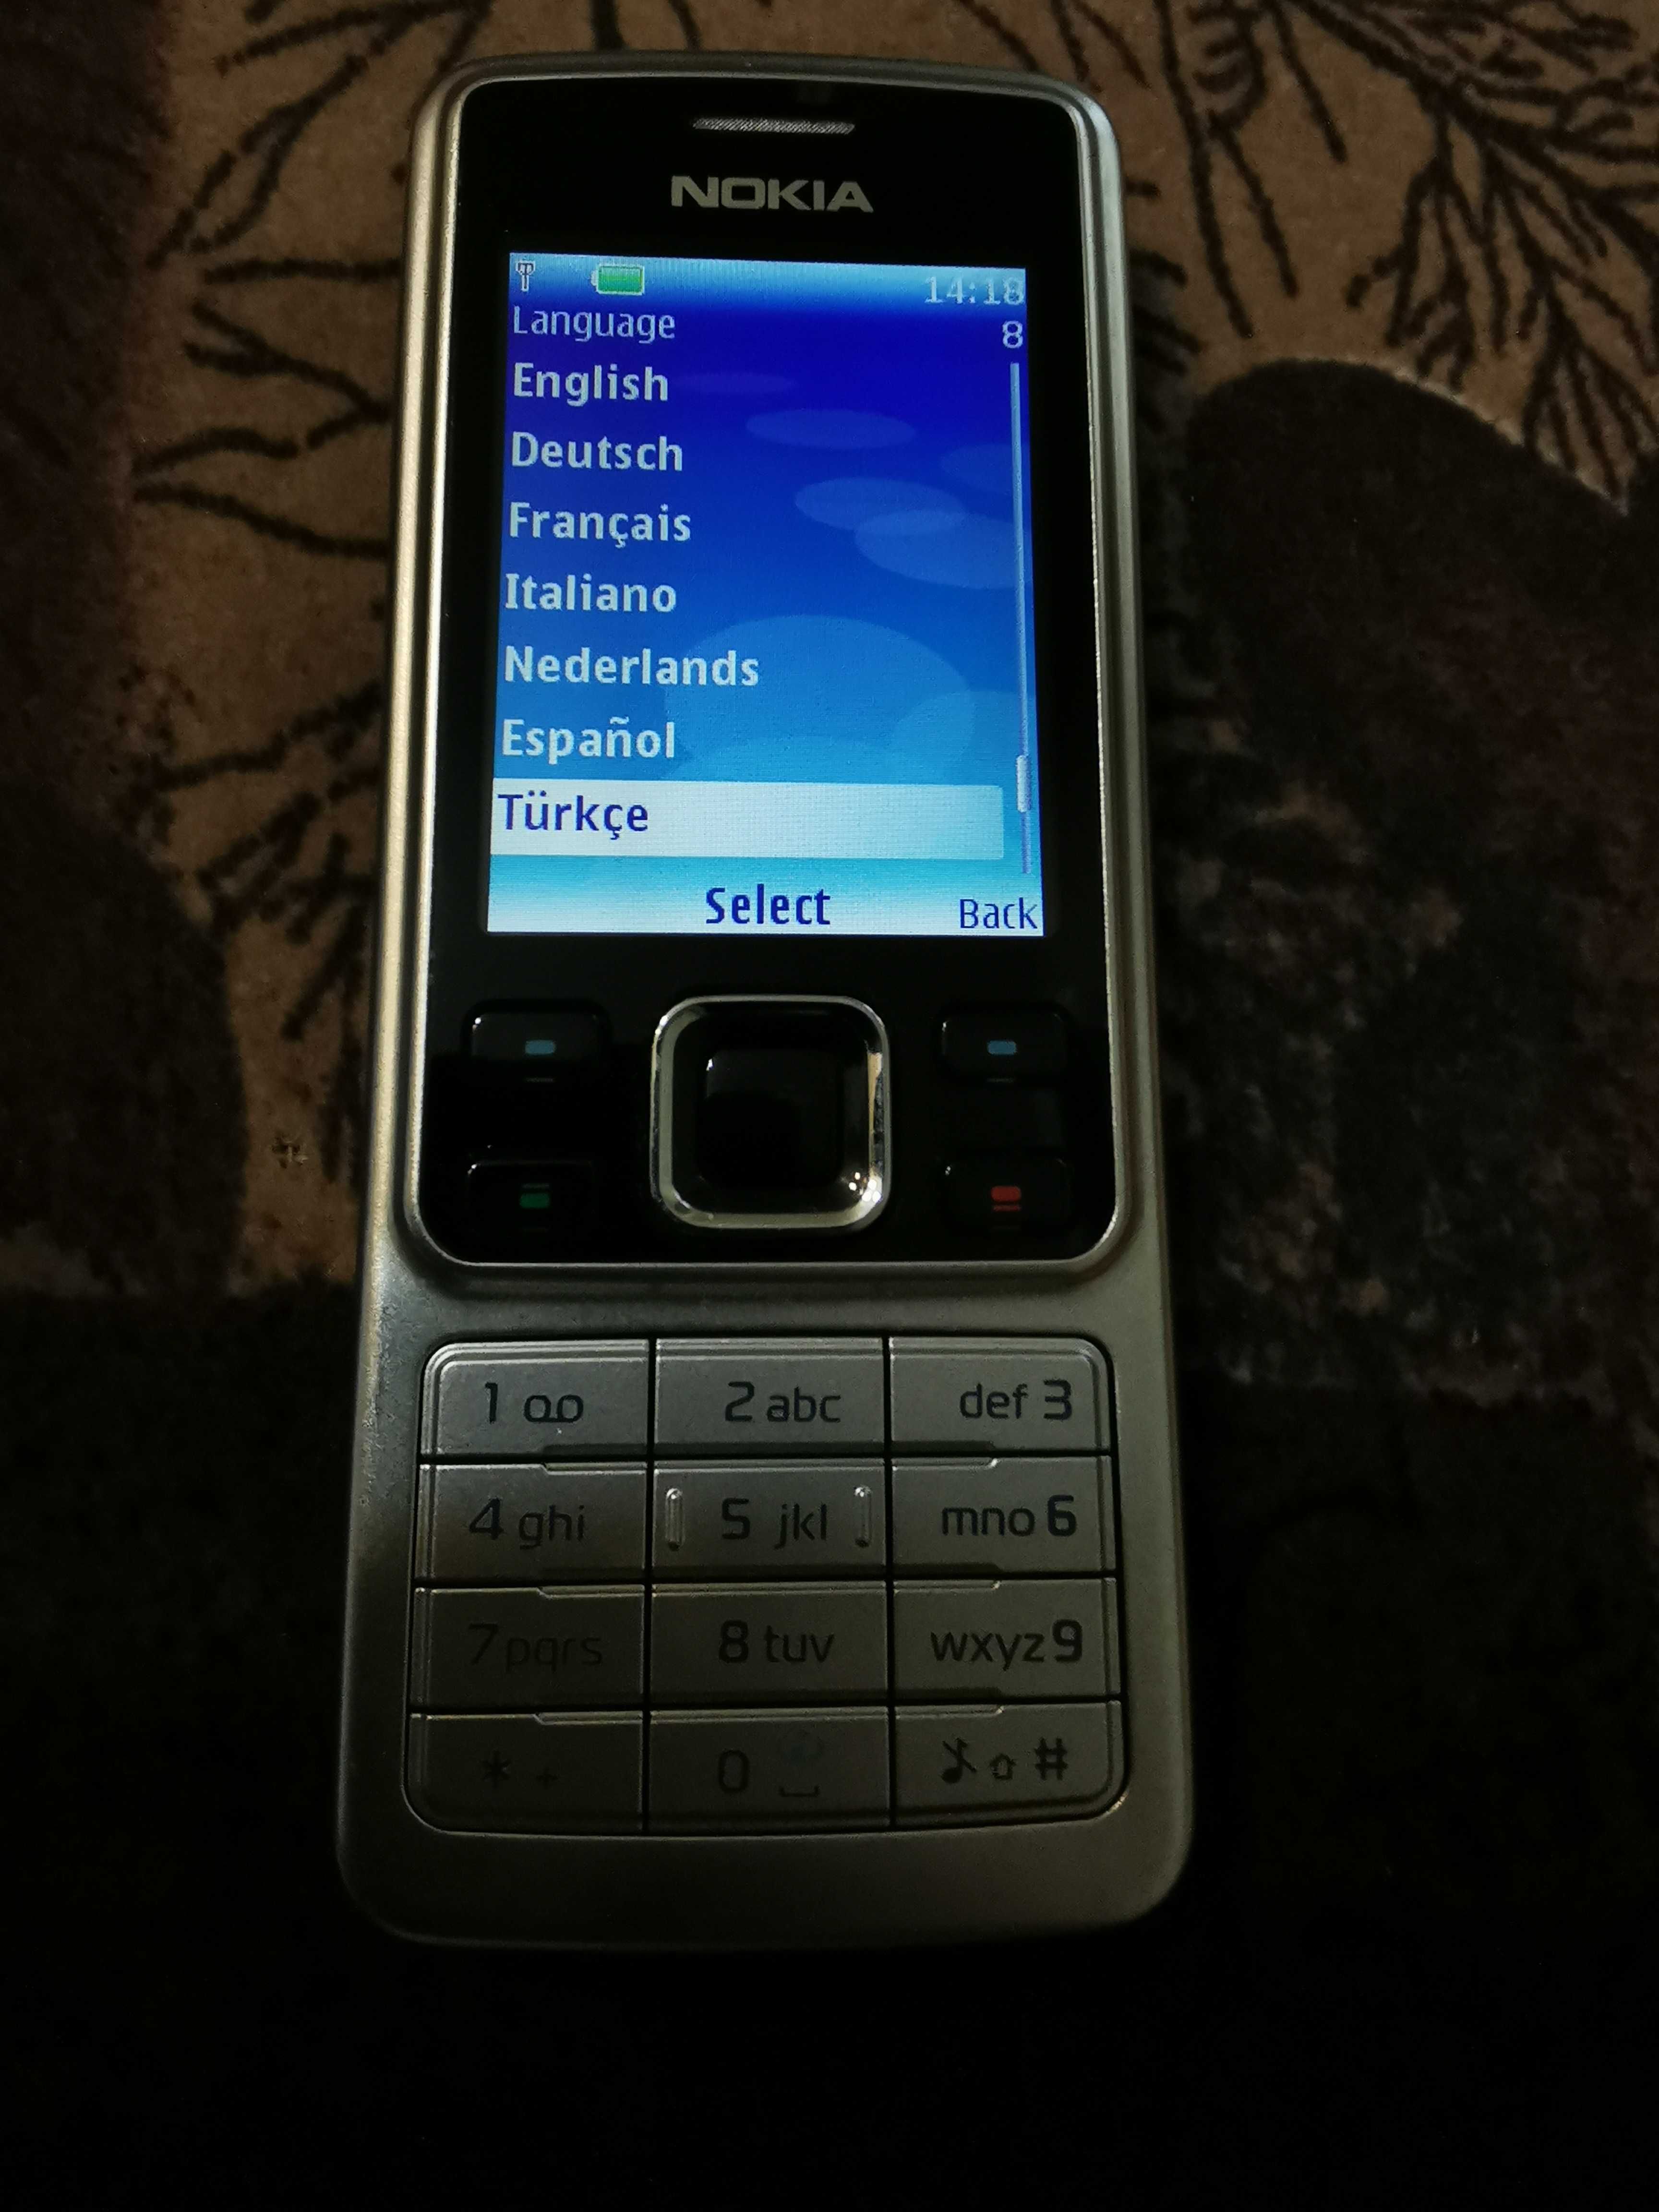 Nokia 6300 RM-217